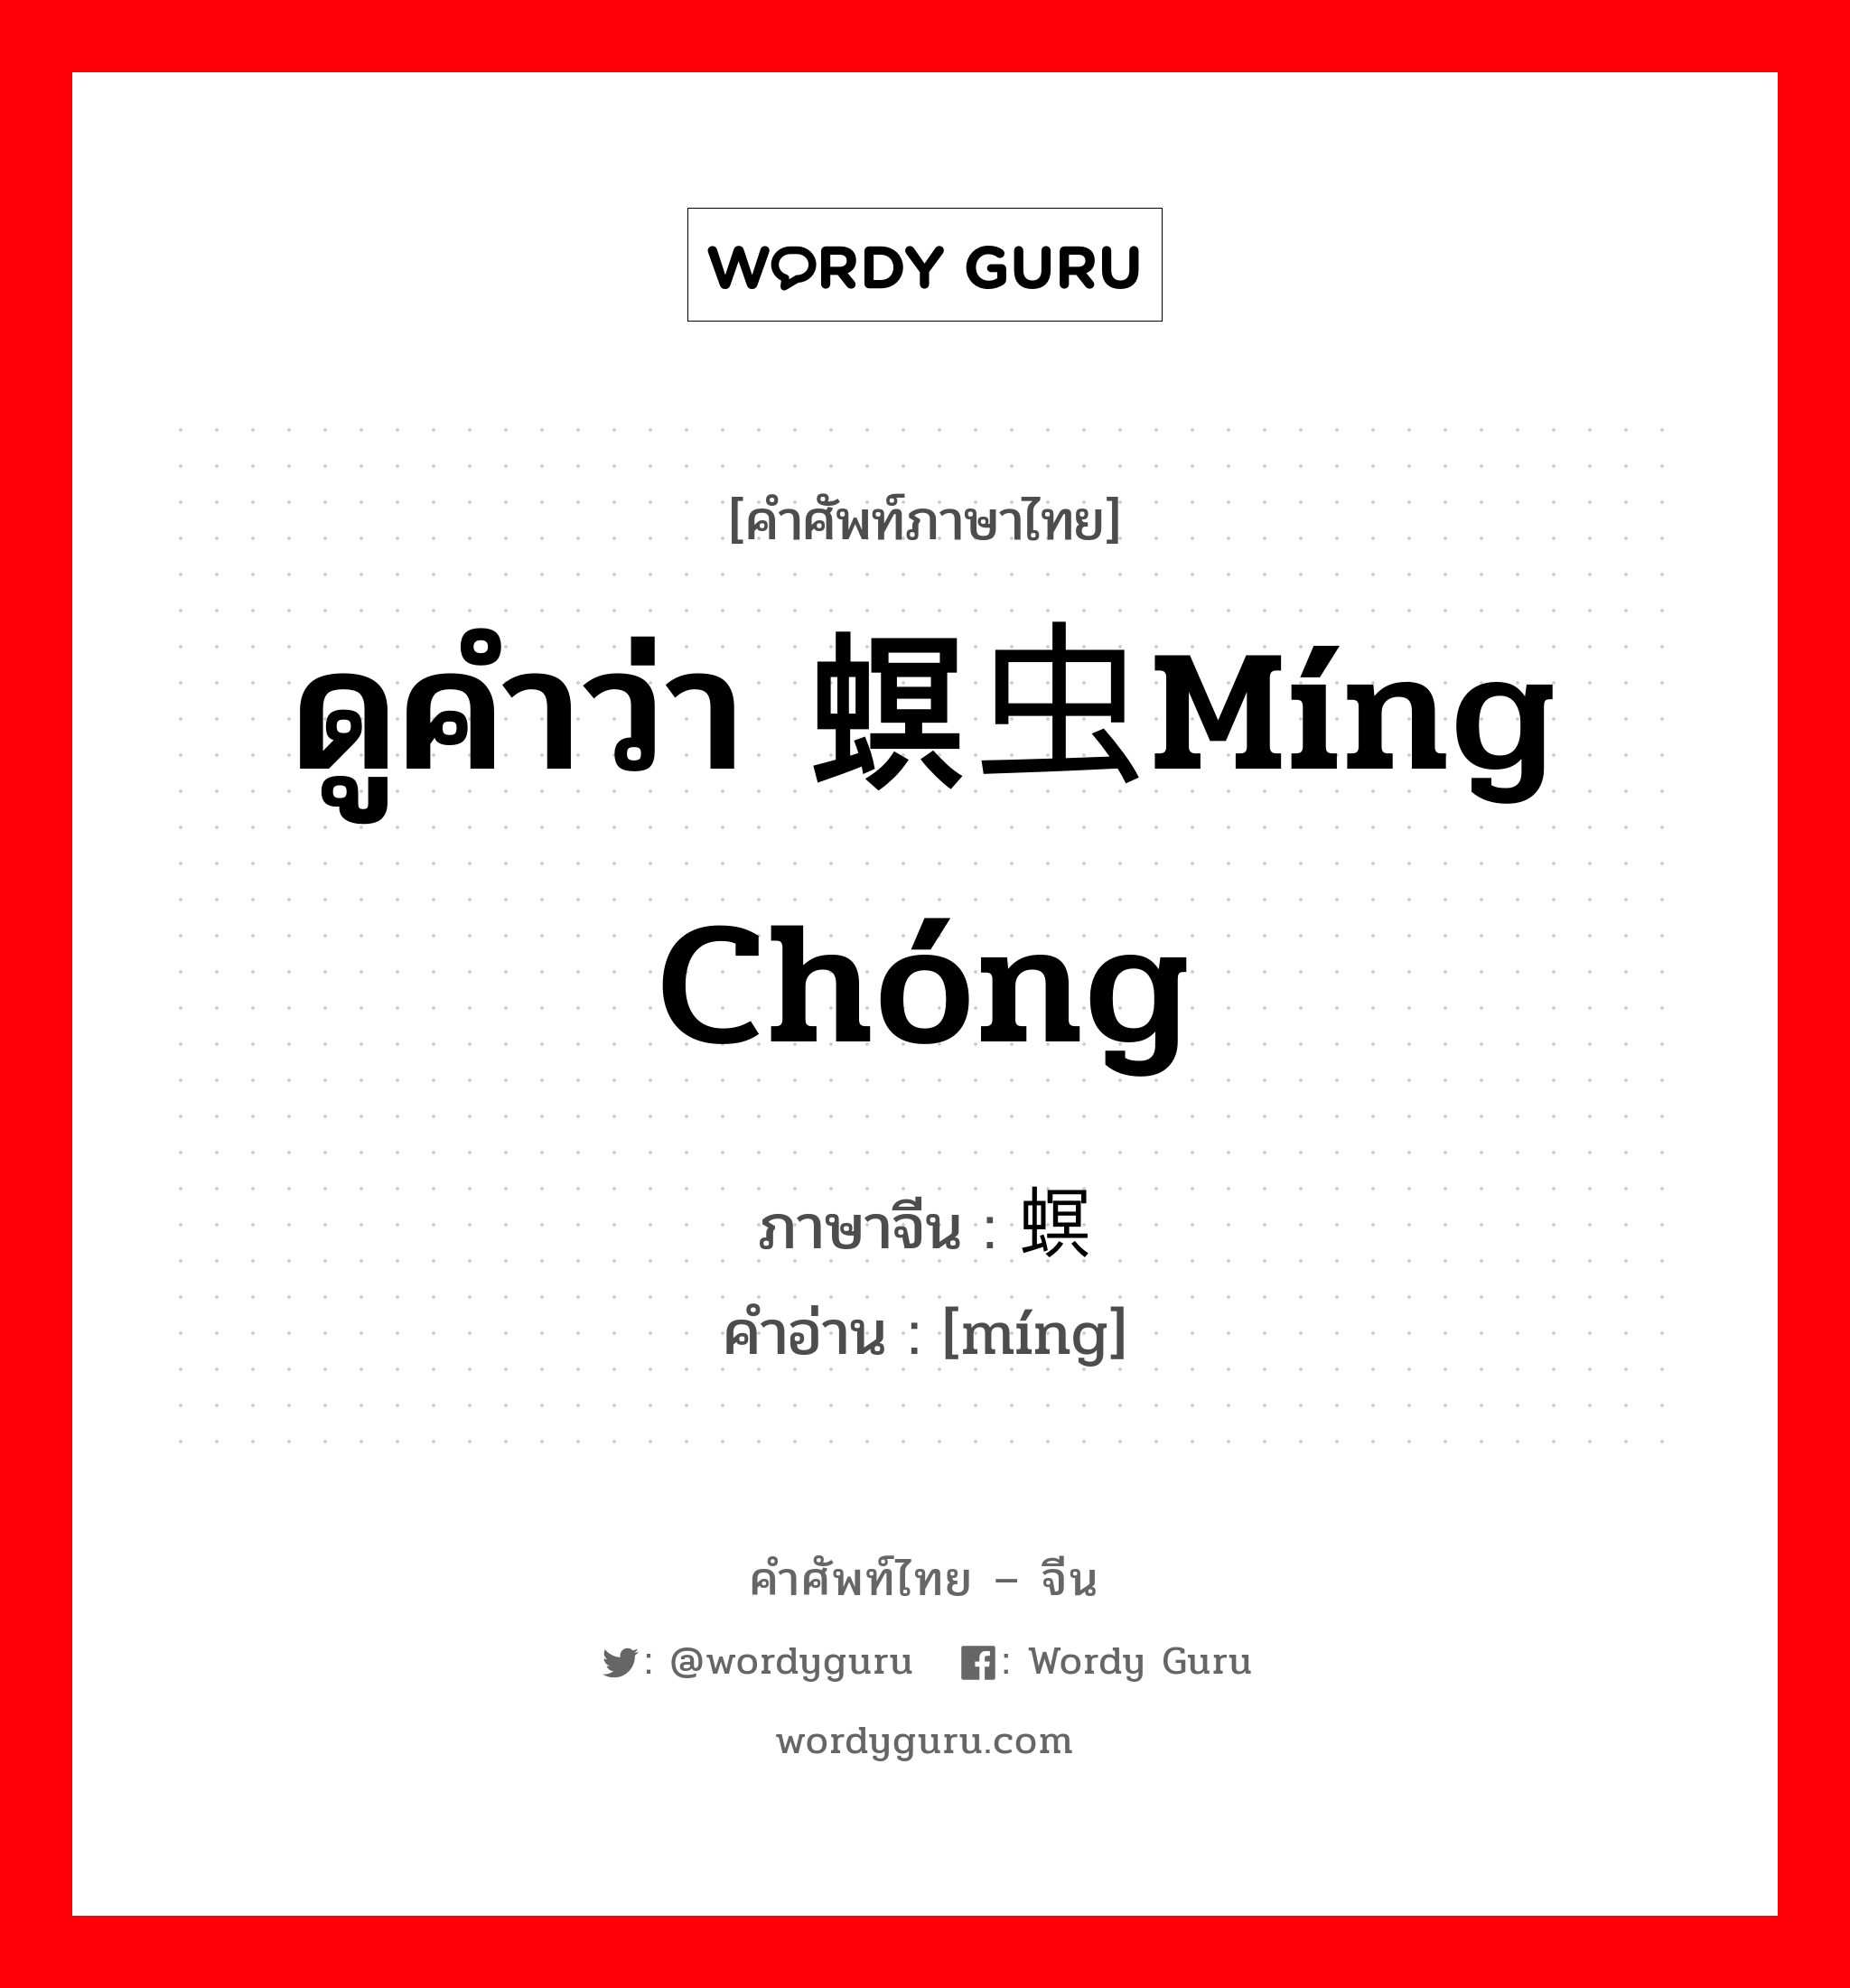 ดูคำว่า 螟虫míng chóng ภาษาจีนคืออะไร, คำศัพท์ภาษาไทย - จีน ดูคำว่า 螟虫míng chóng ภาษาจีน 螟 คำอ่าน [míng]